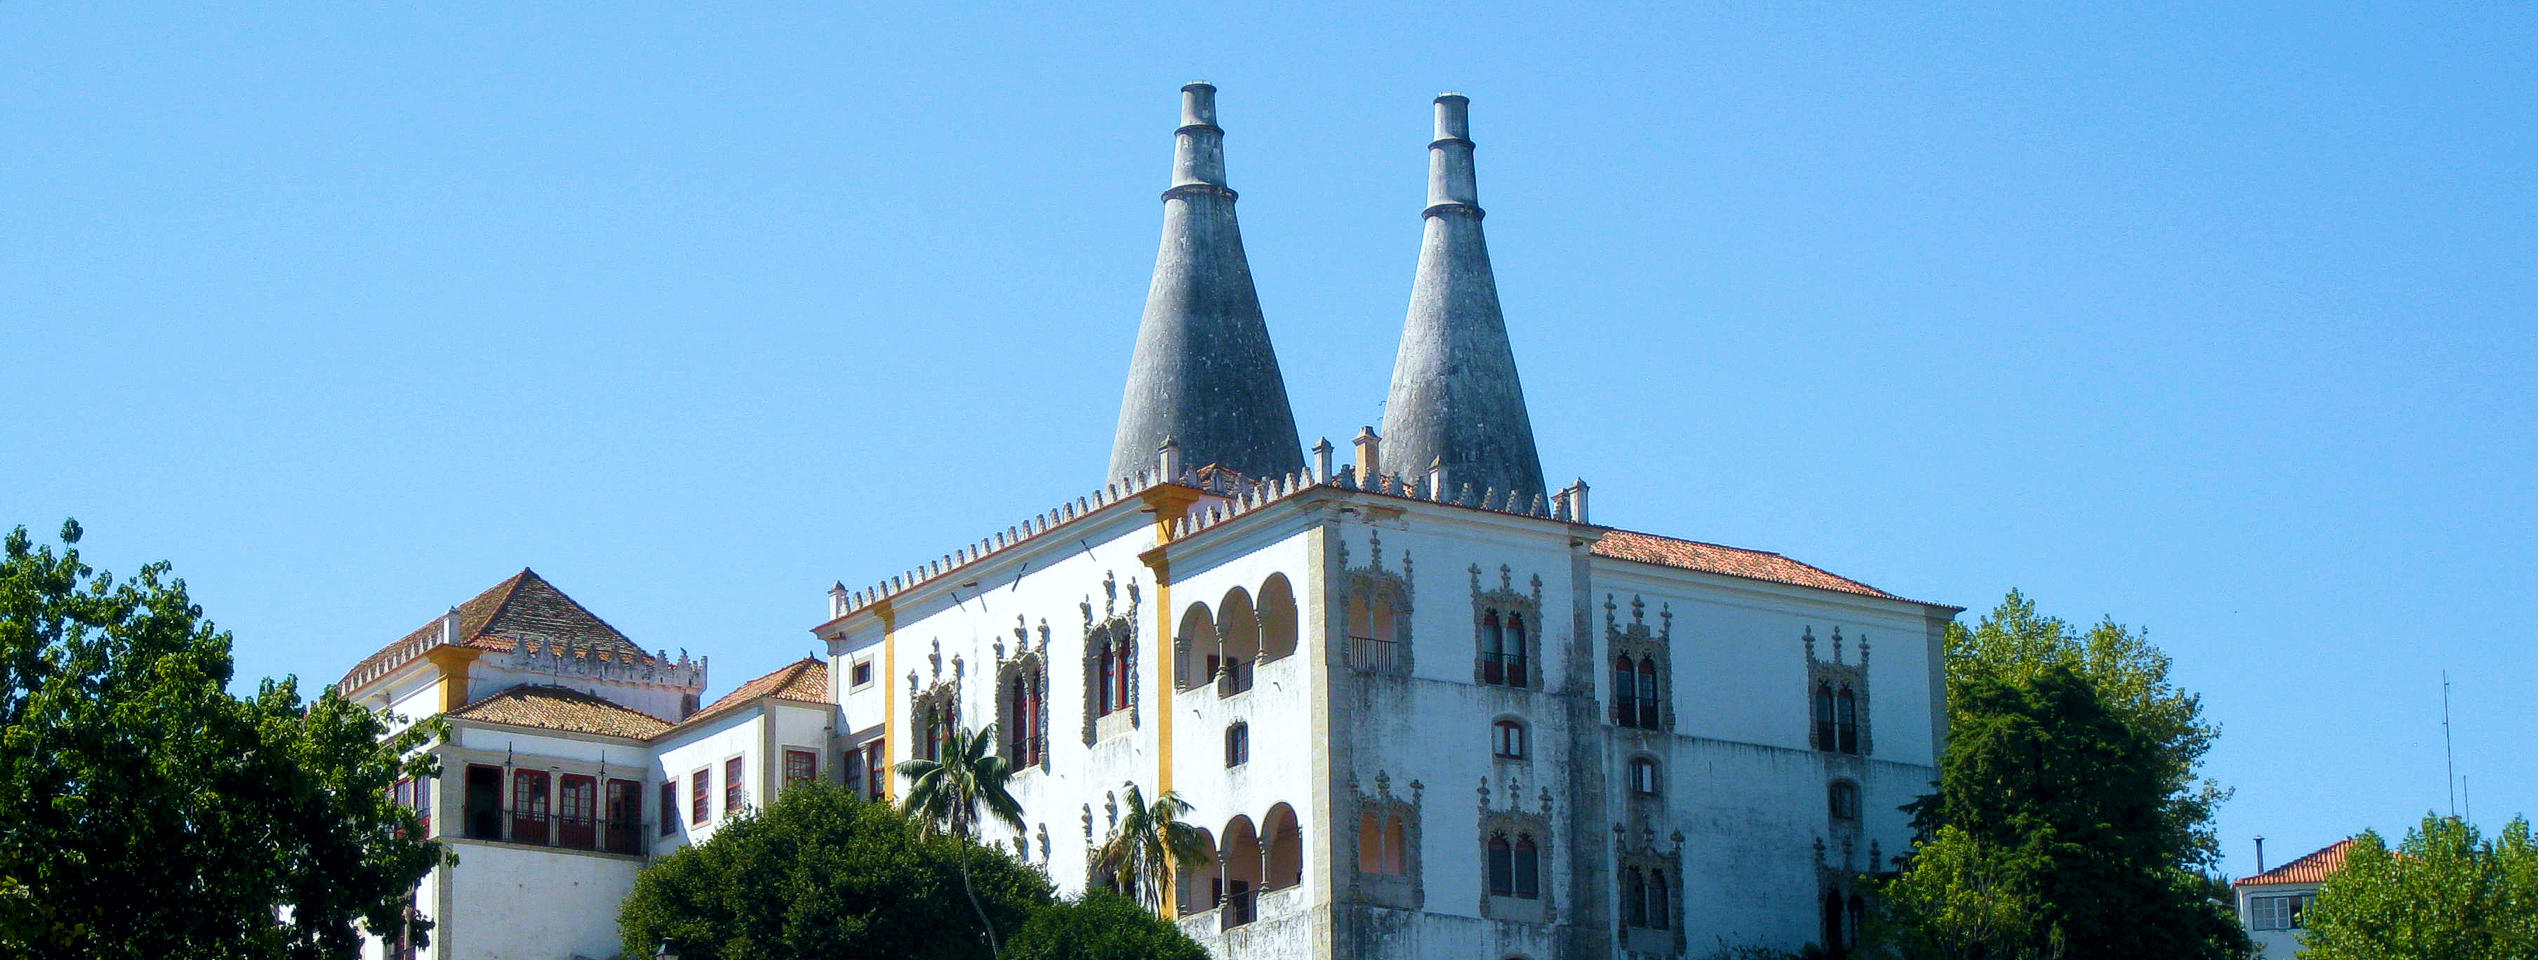 Palais National de Sintra avec ses deux cheminées point de repère des paysages de Sintra